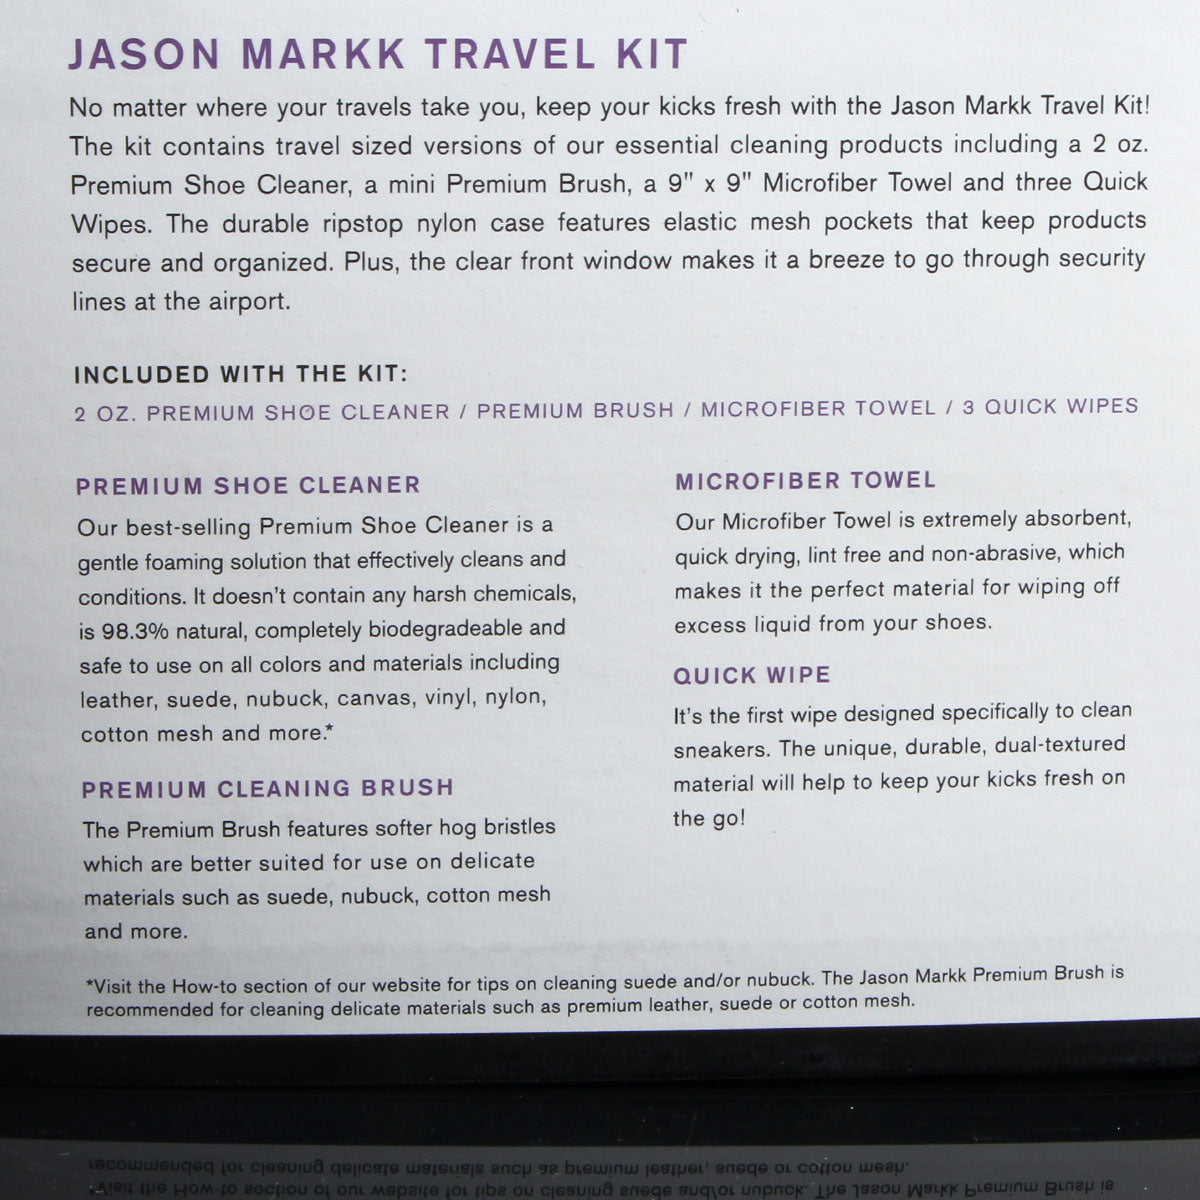 Jason Markk Travel Shoe Cleaning Kit